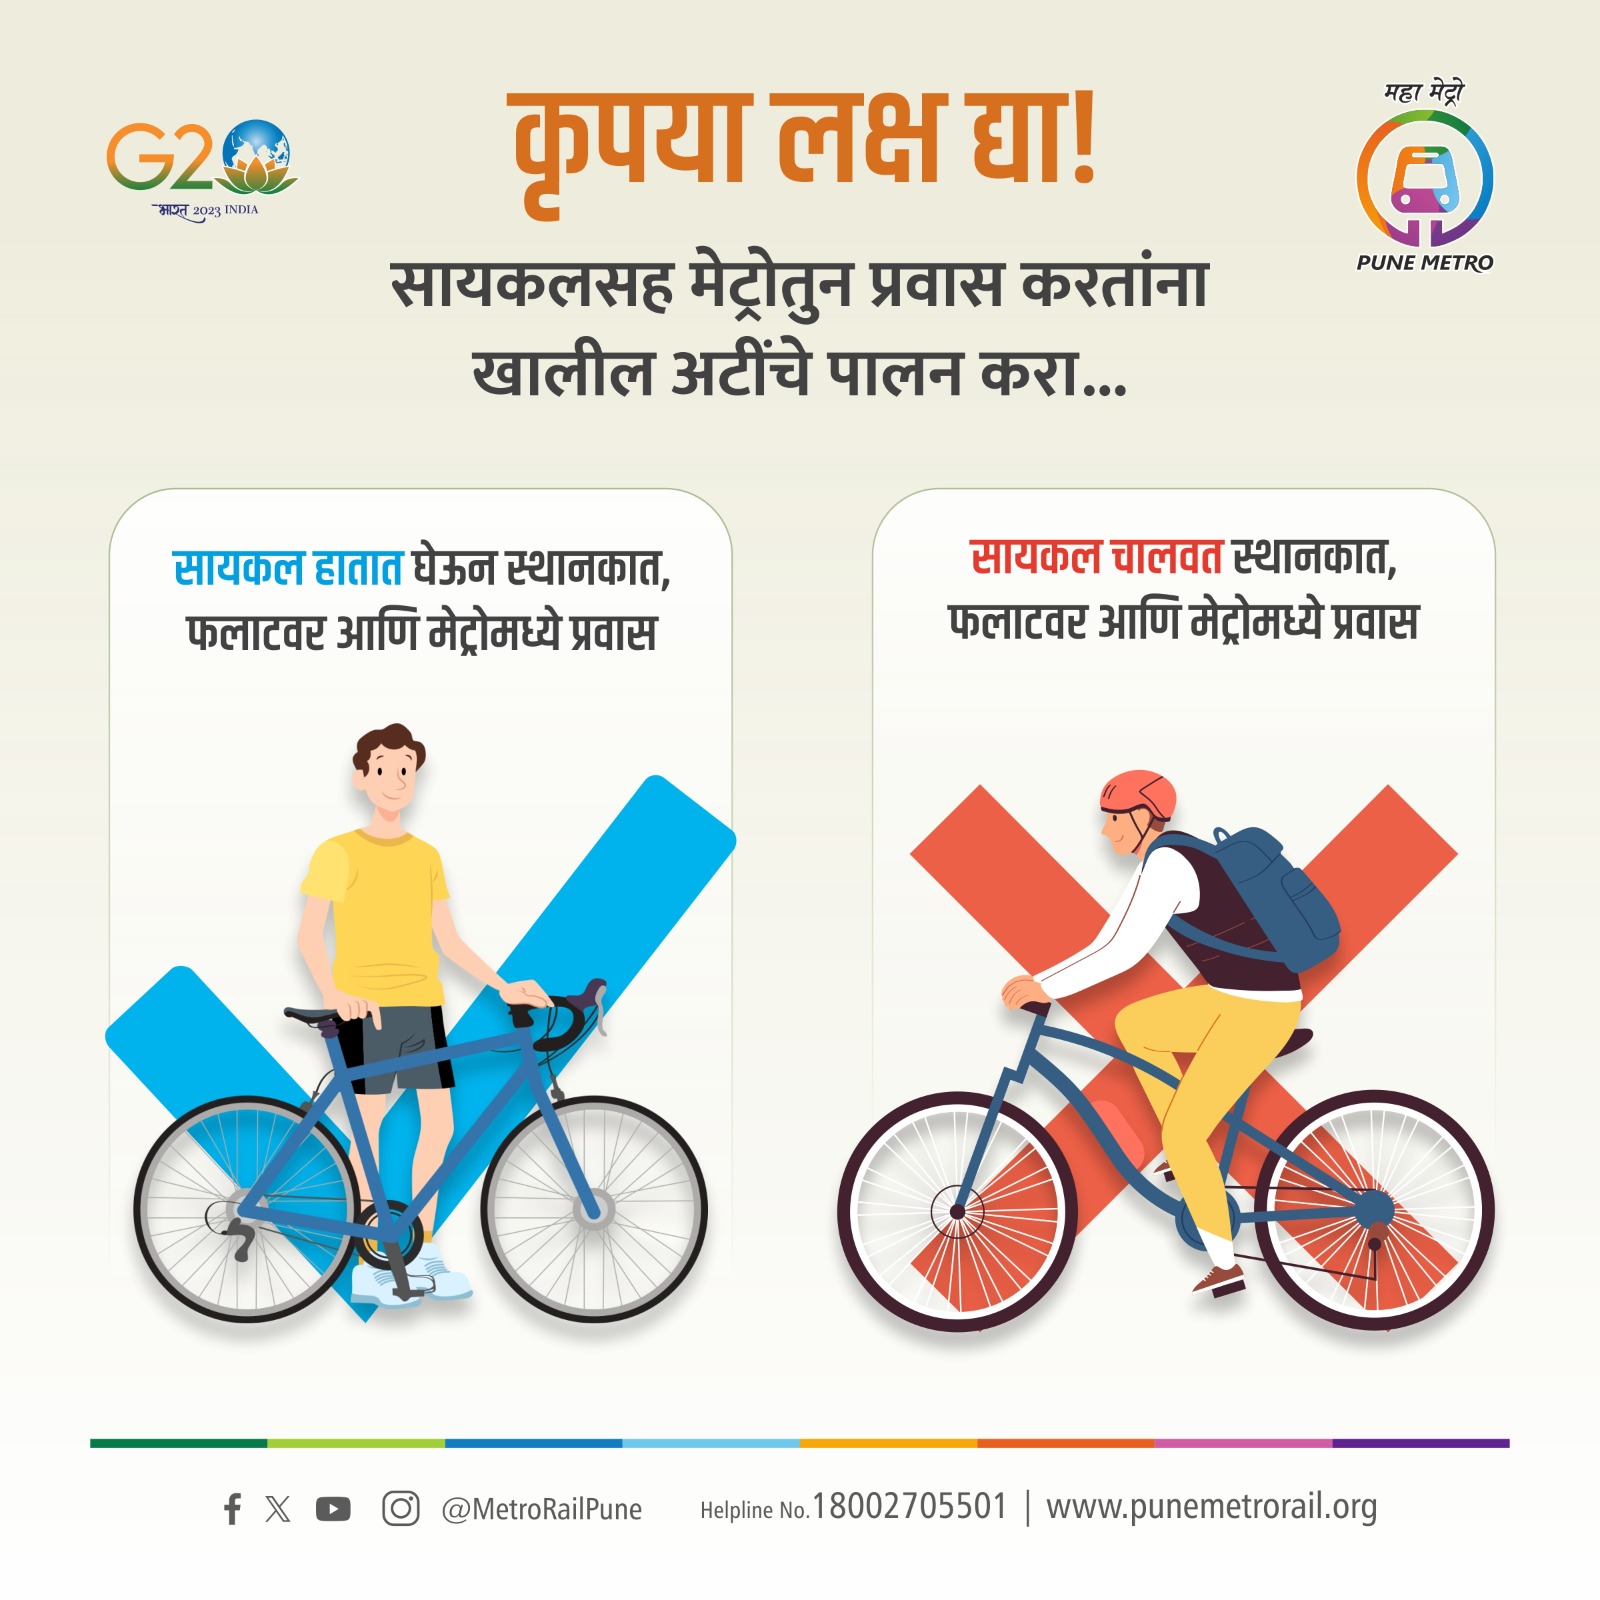 Pune Metro Travel with Cycle | पुणे मेट्रोत सायकल घेऊन प्रवास करू शकता का? जाणून घ्या सविस्तर